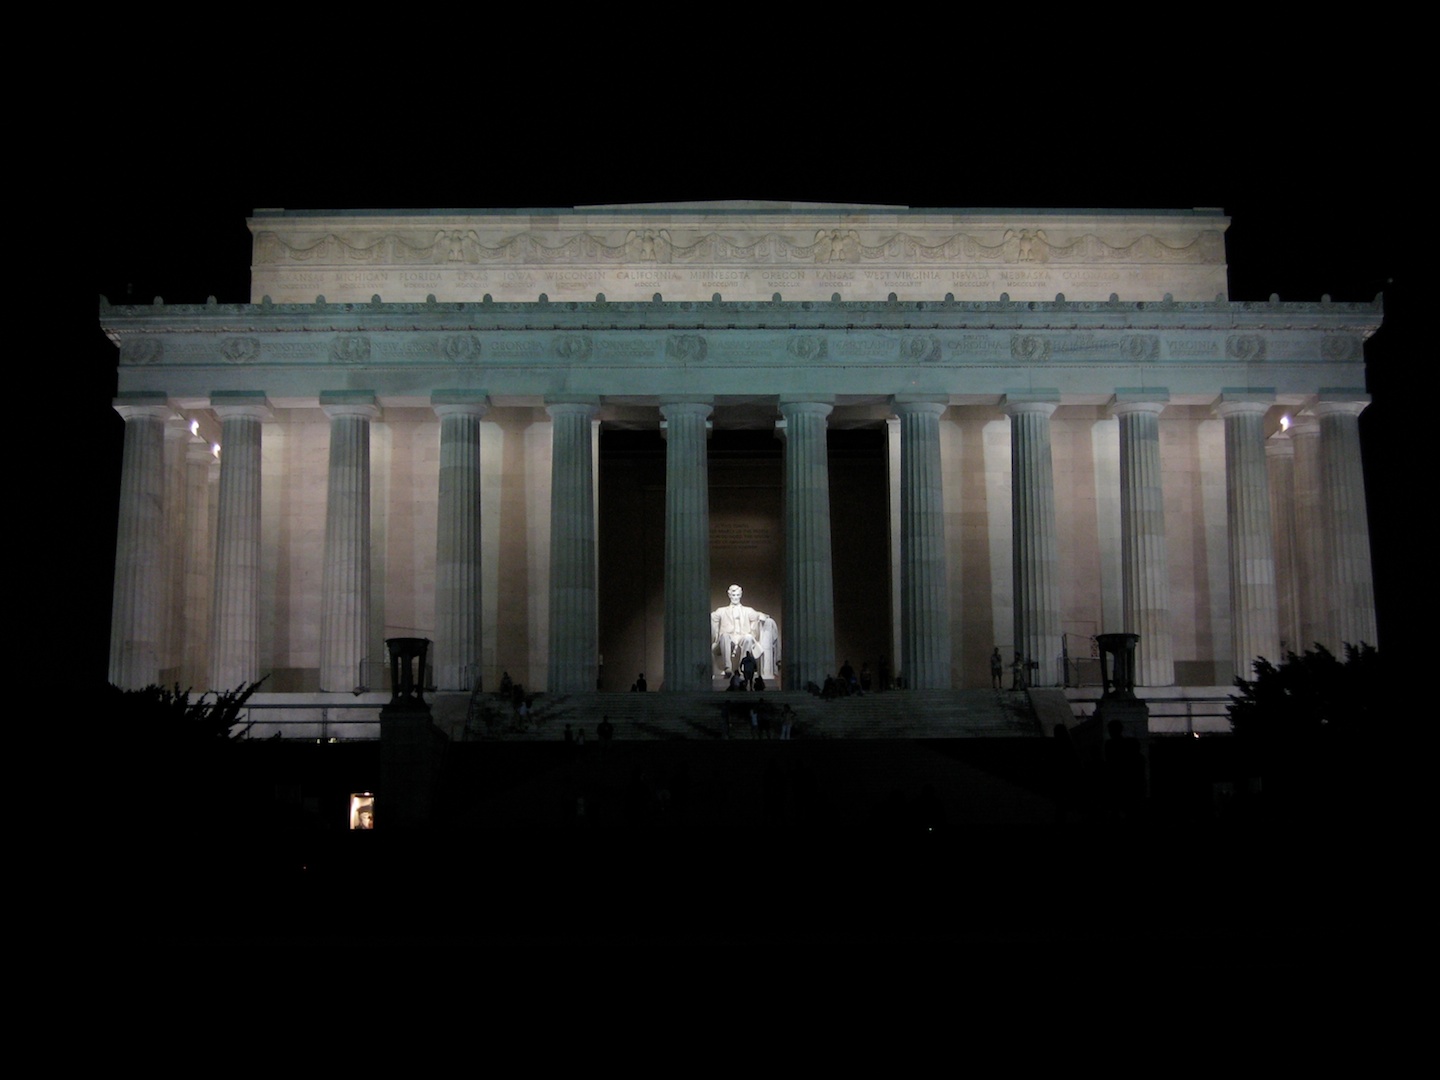 The Lincoln Memorial, Washington, DC